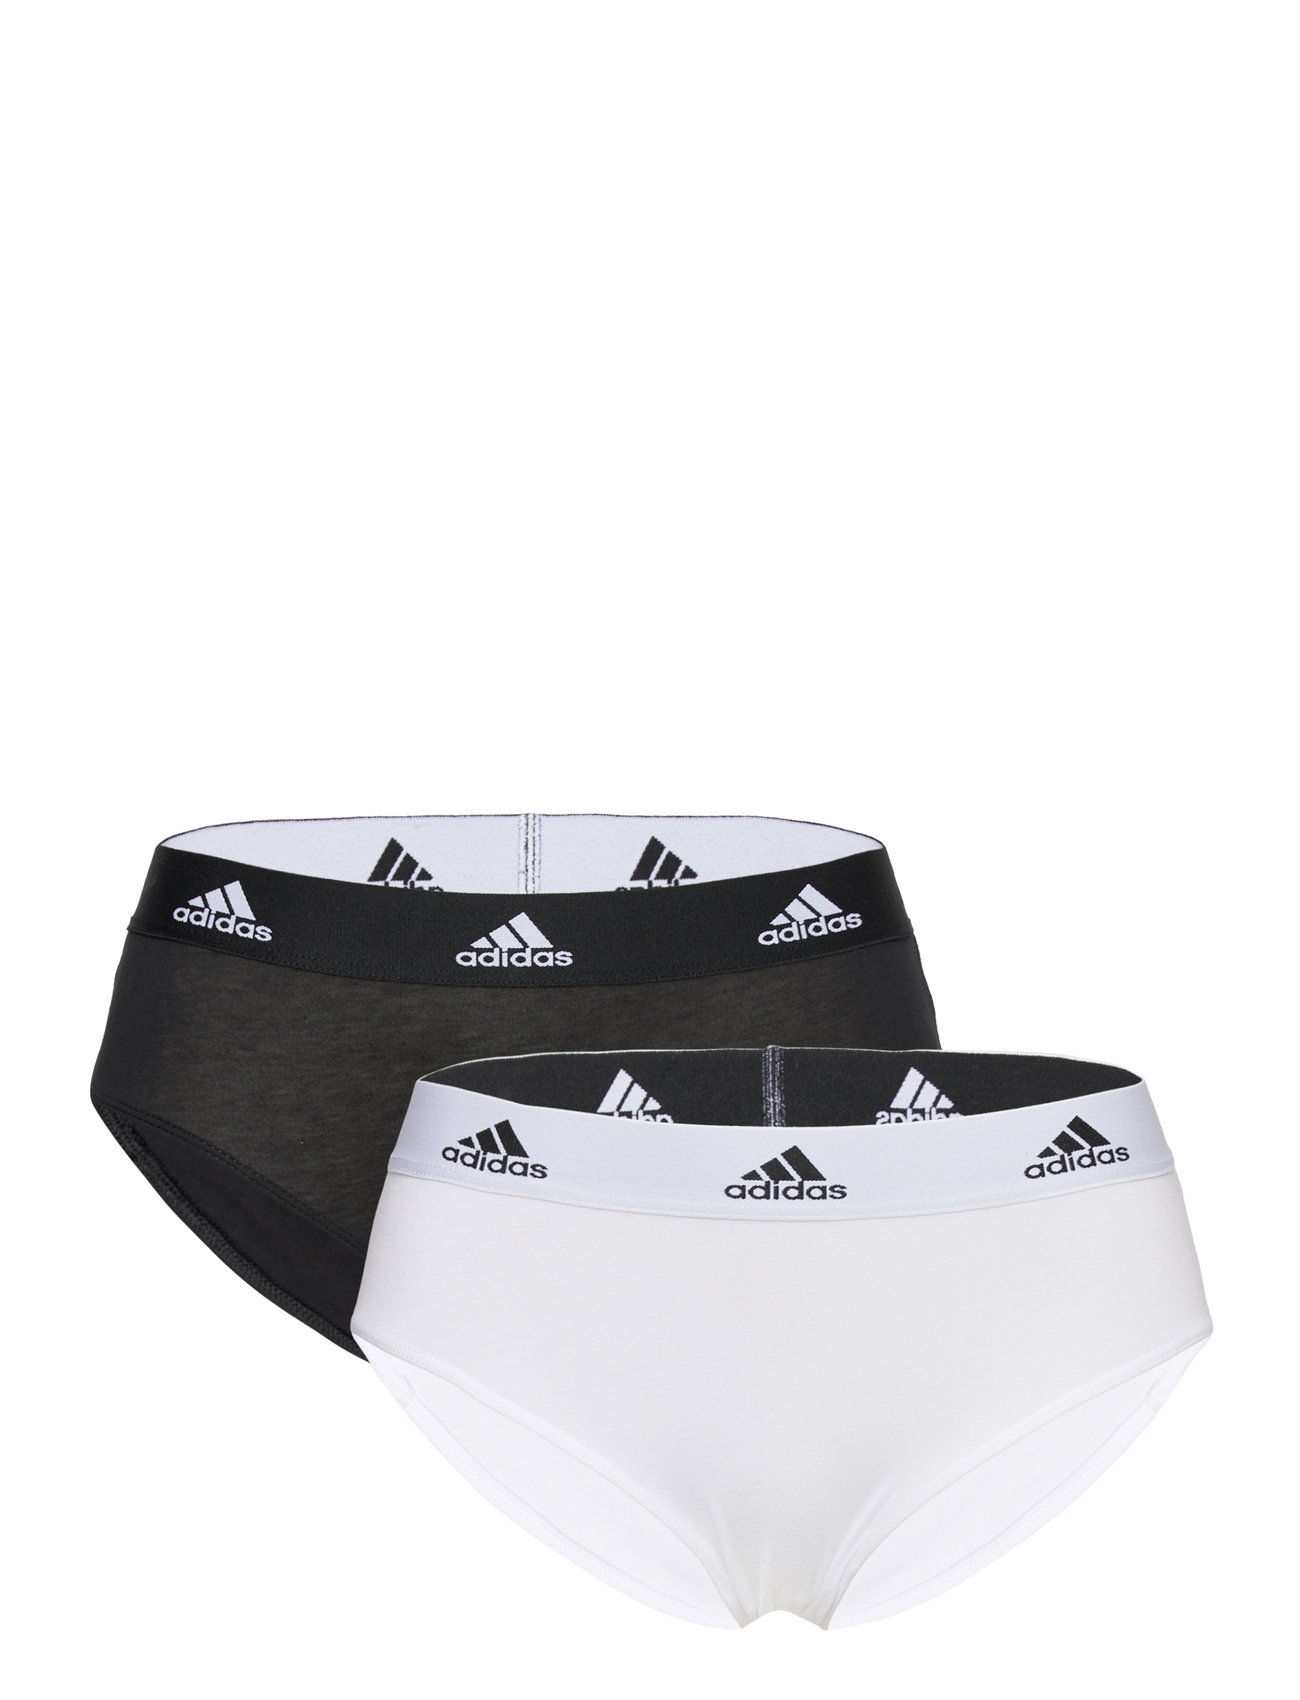 Brief Sport Panties Briefs White Adidas Underwear